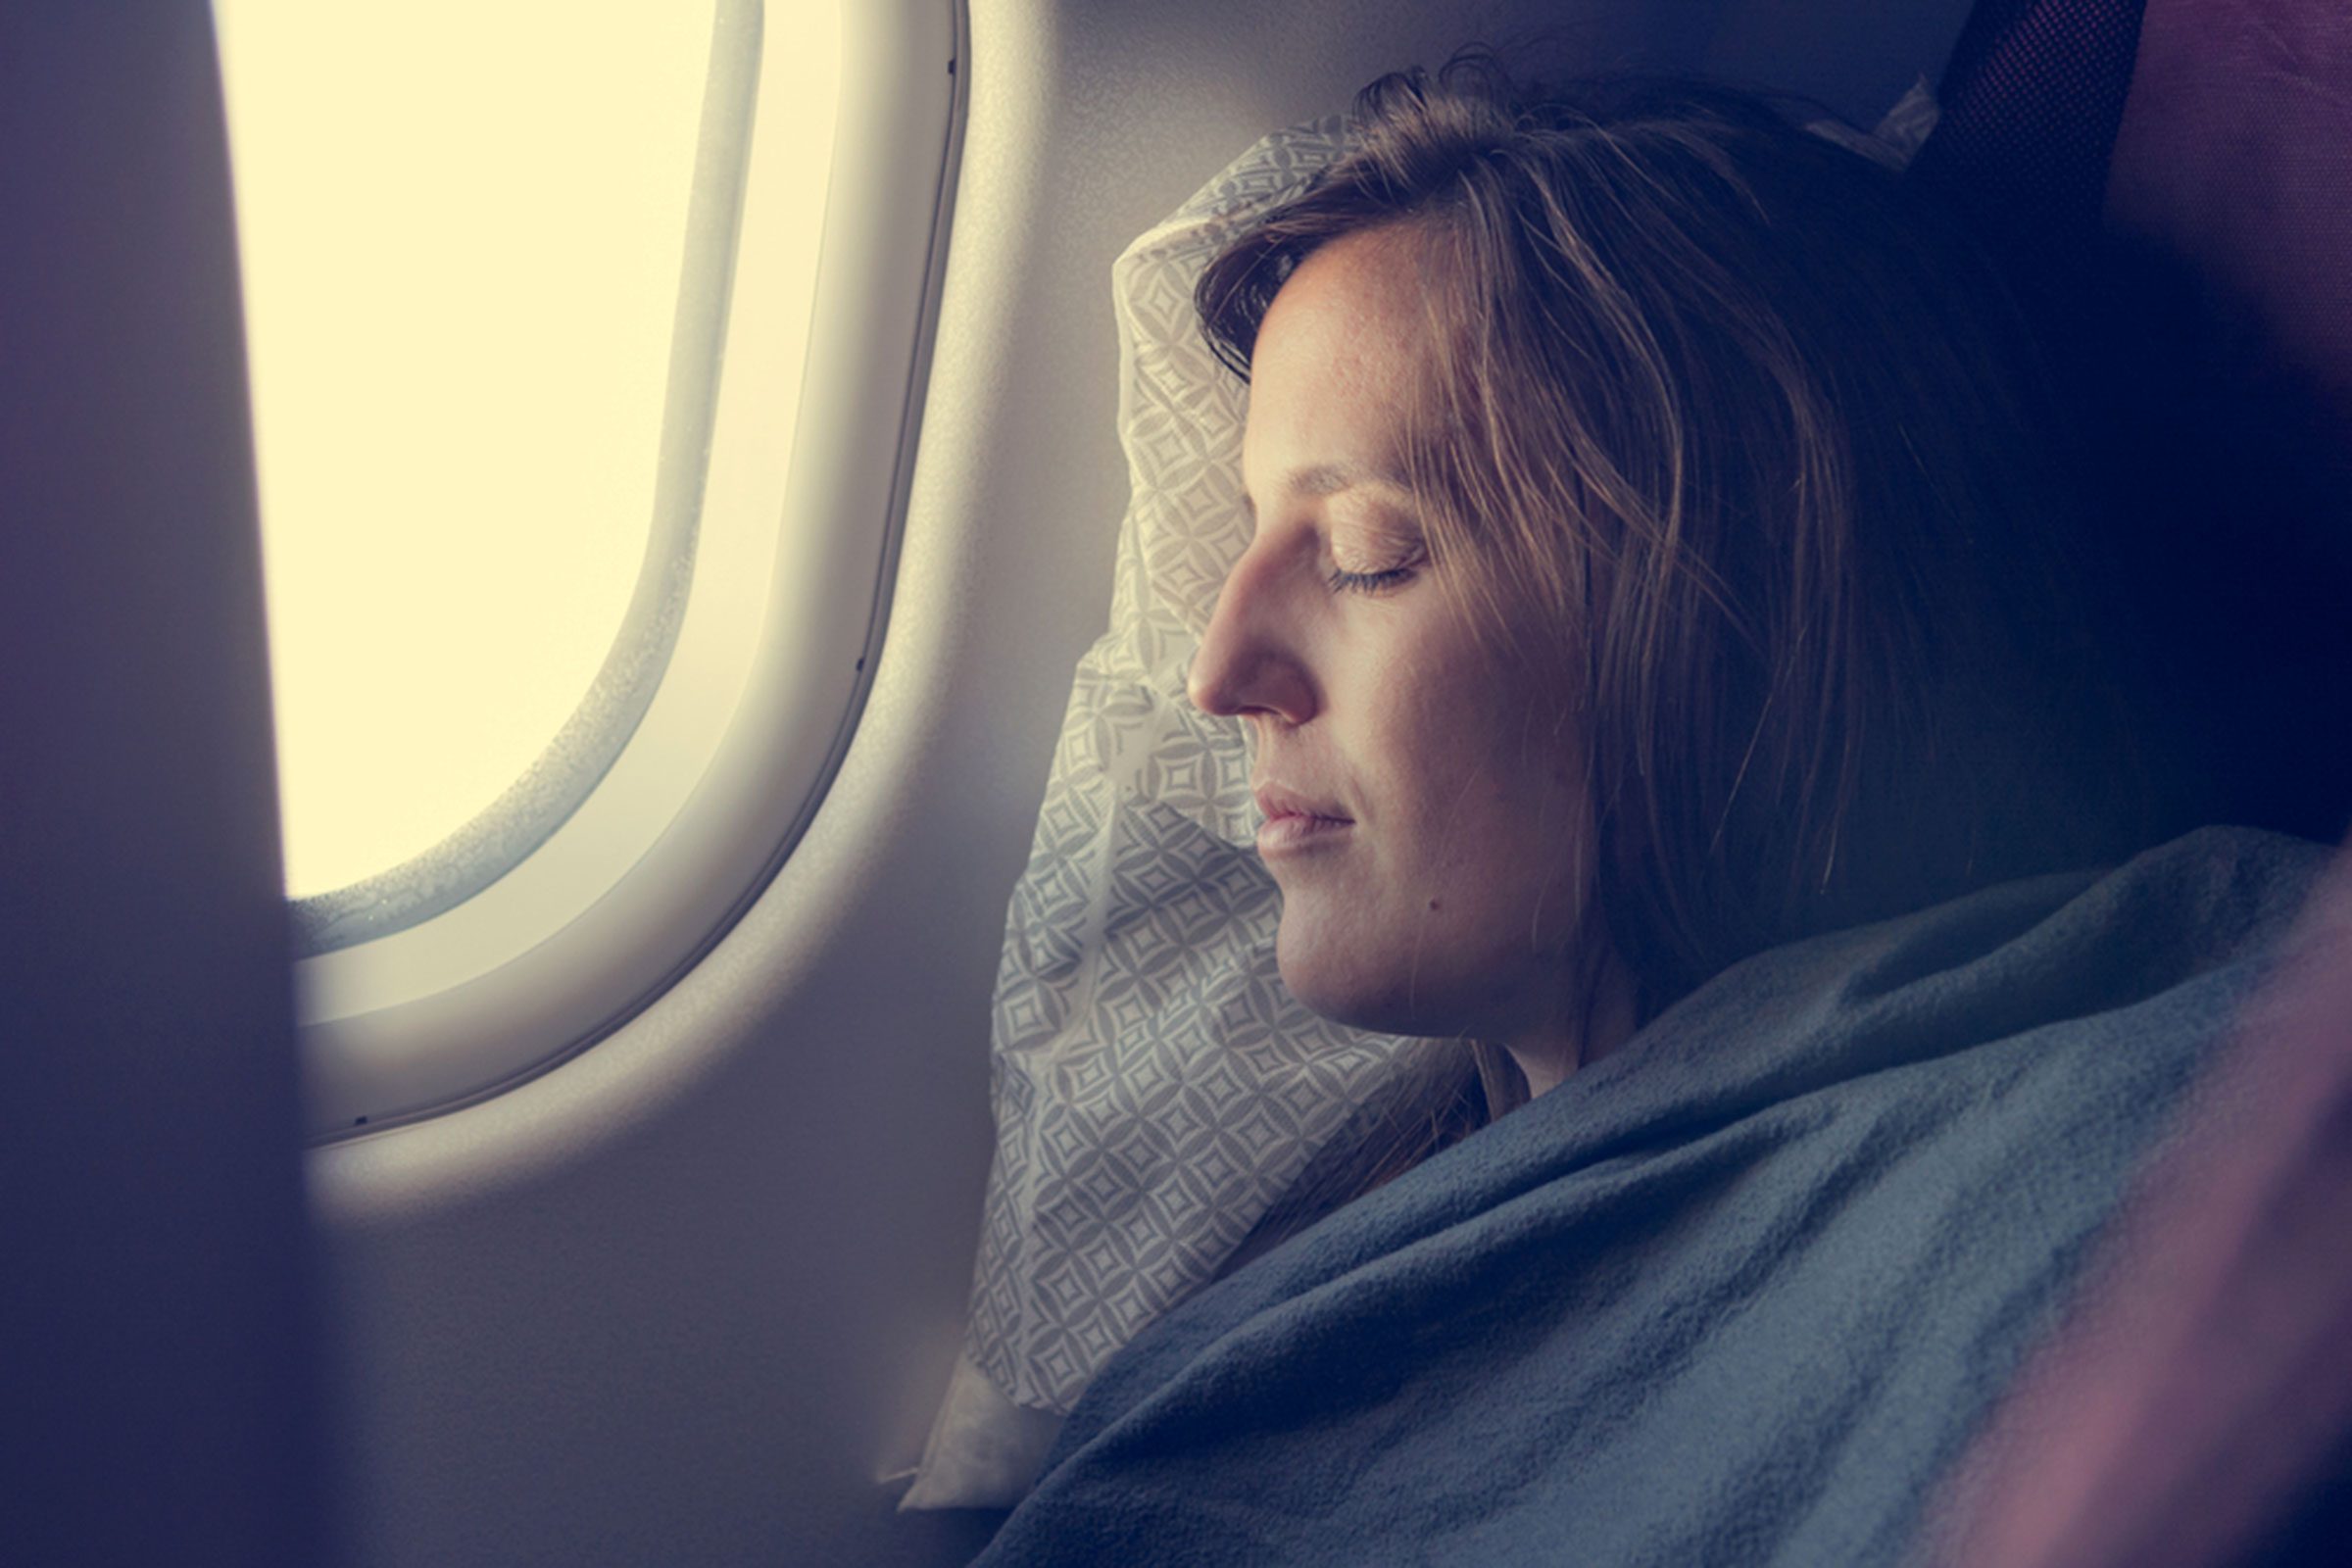 ¿Nunca se puede dormir en un avión? Viajeros experimentados revelan 14 secretos para dormir 